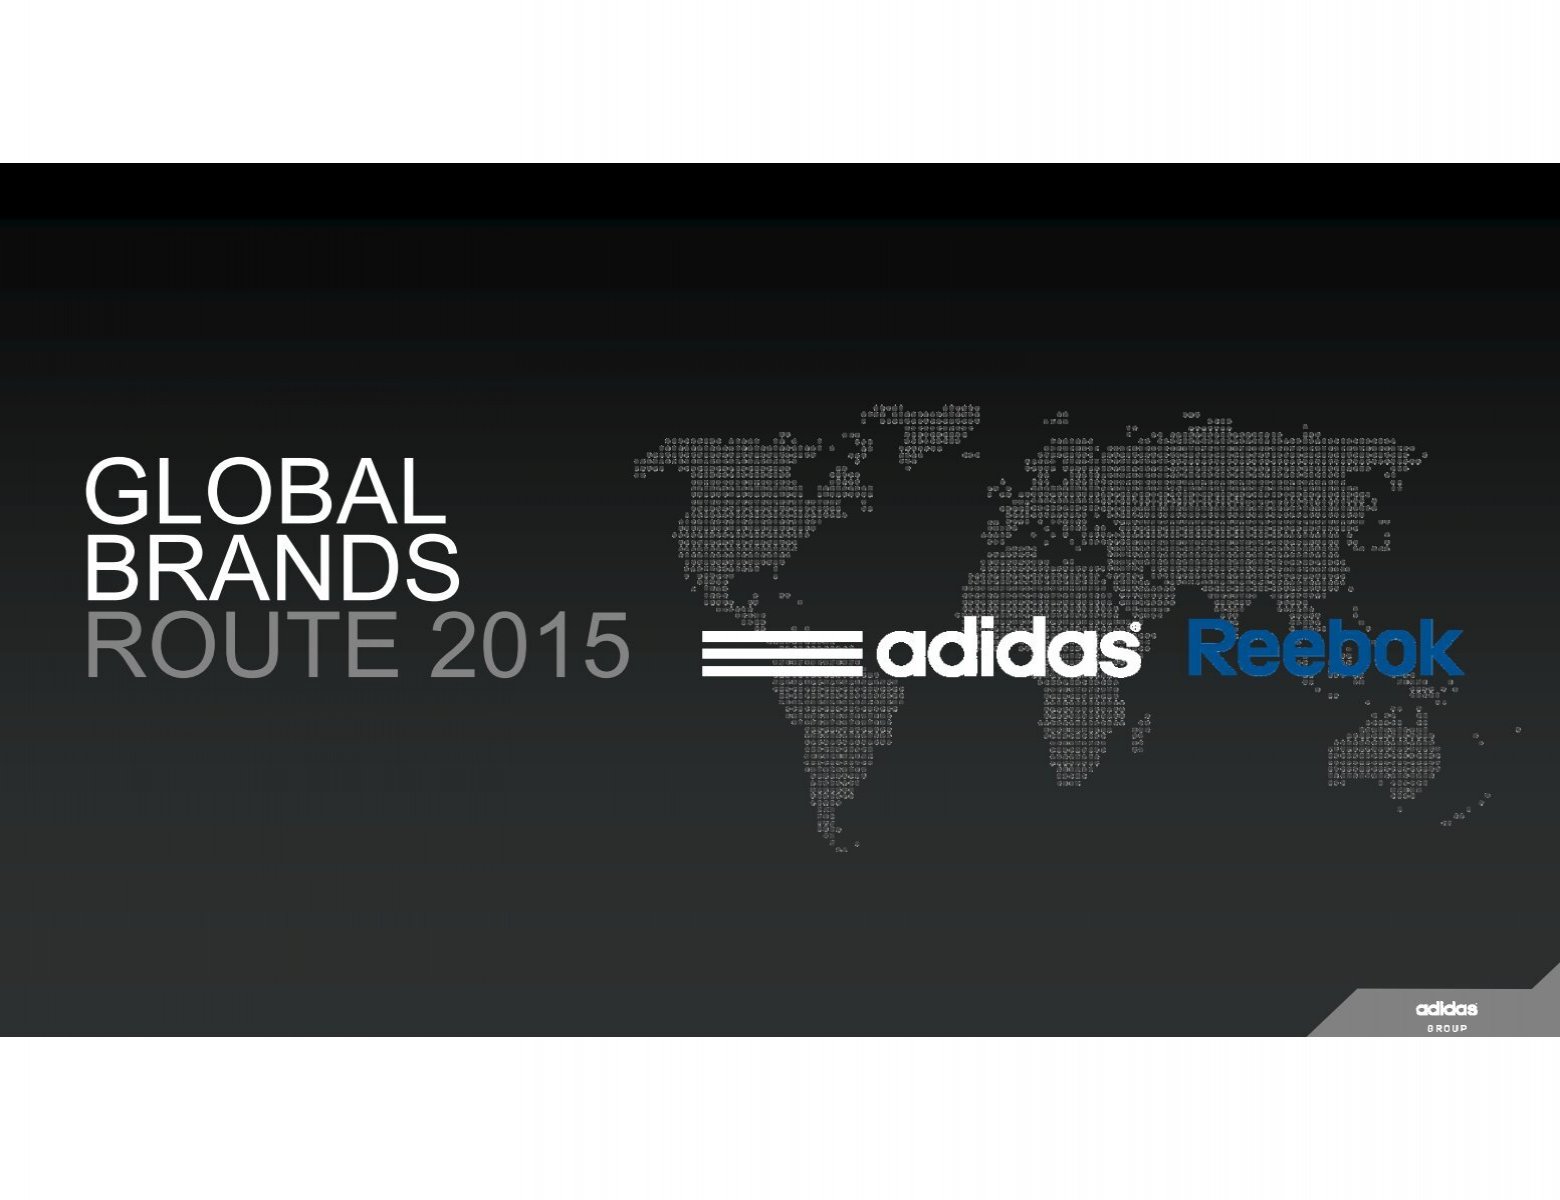 adidas konzernbericht 2015